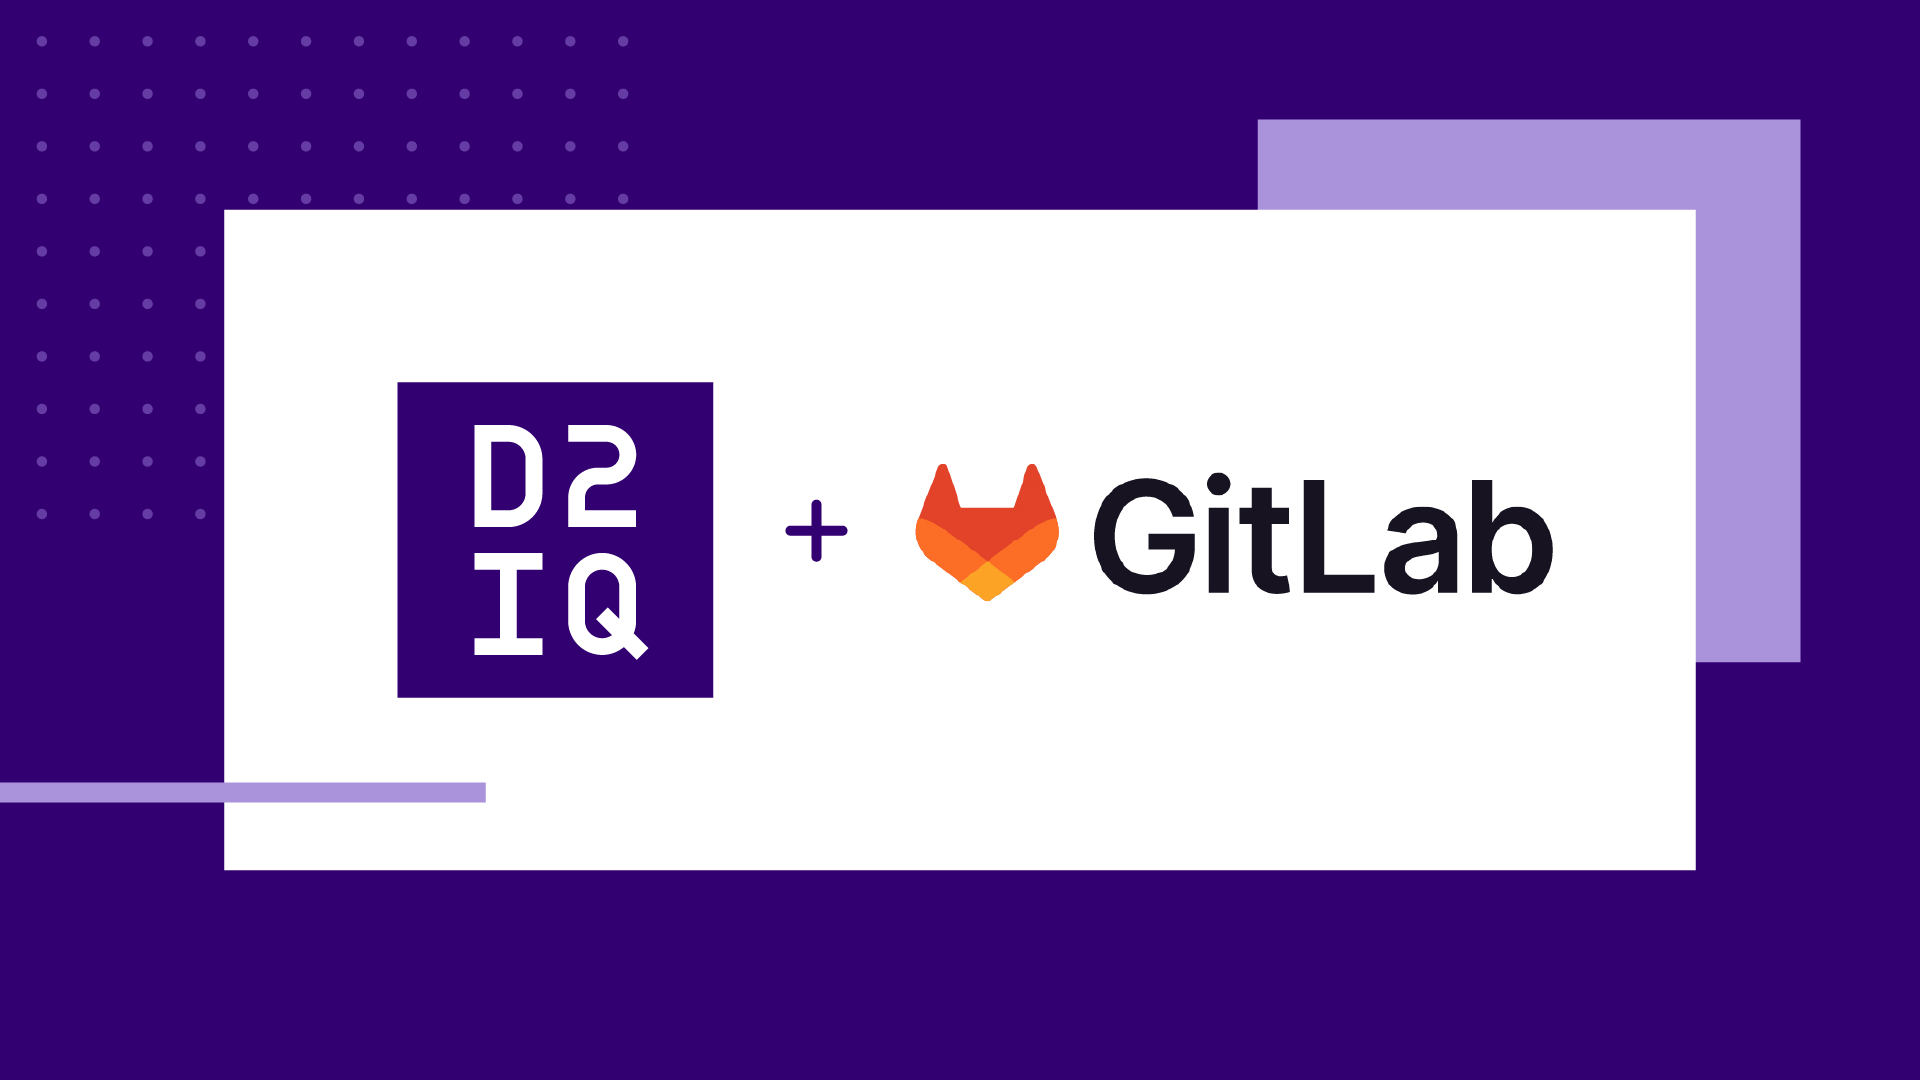 D2iQ Kubernetes Platform + GitLab: Deliver Better Code Faster